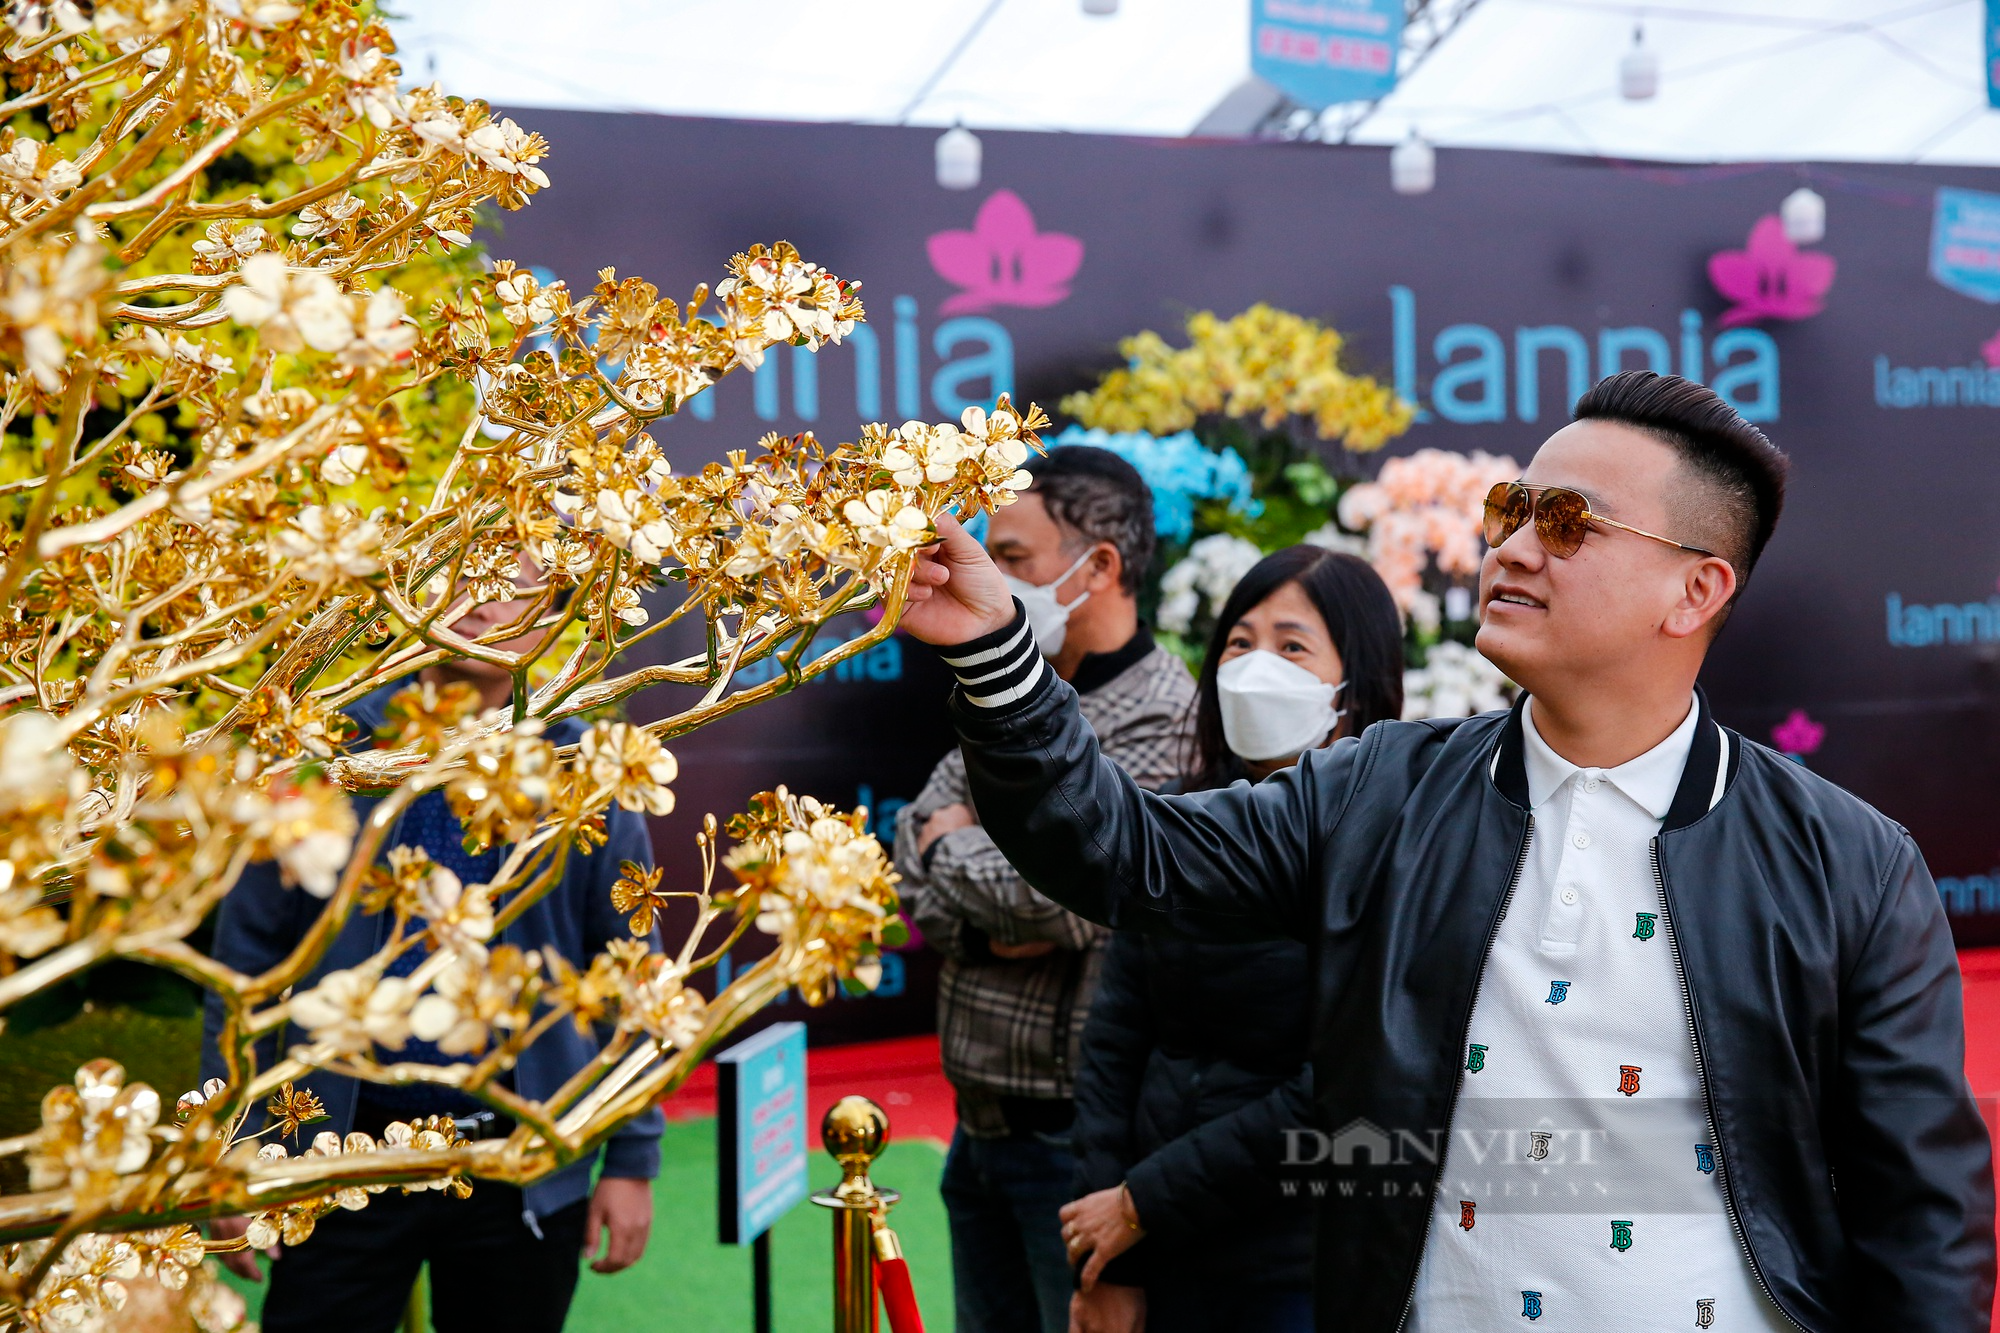 Ngắm cây mai mạ vàng 24k lớn nhất Việt Nam được chào bán 5,5 tỷ đồng tại Hà Nội - Ảnh 7.